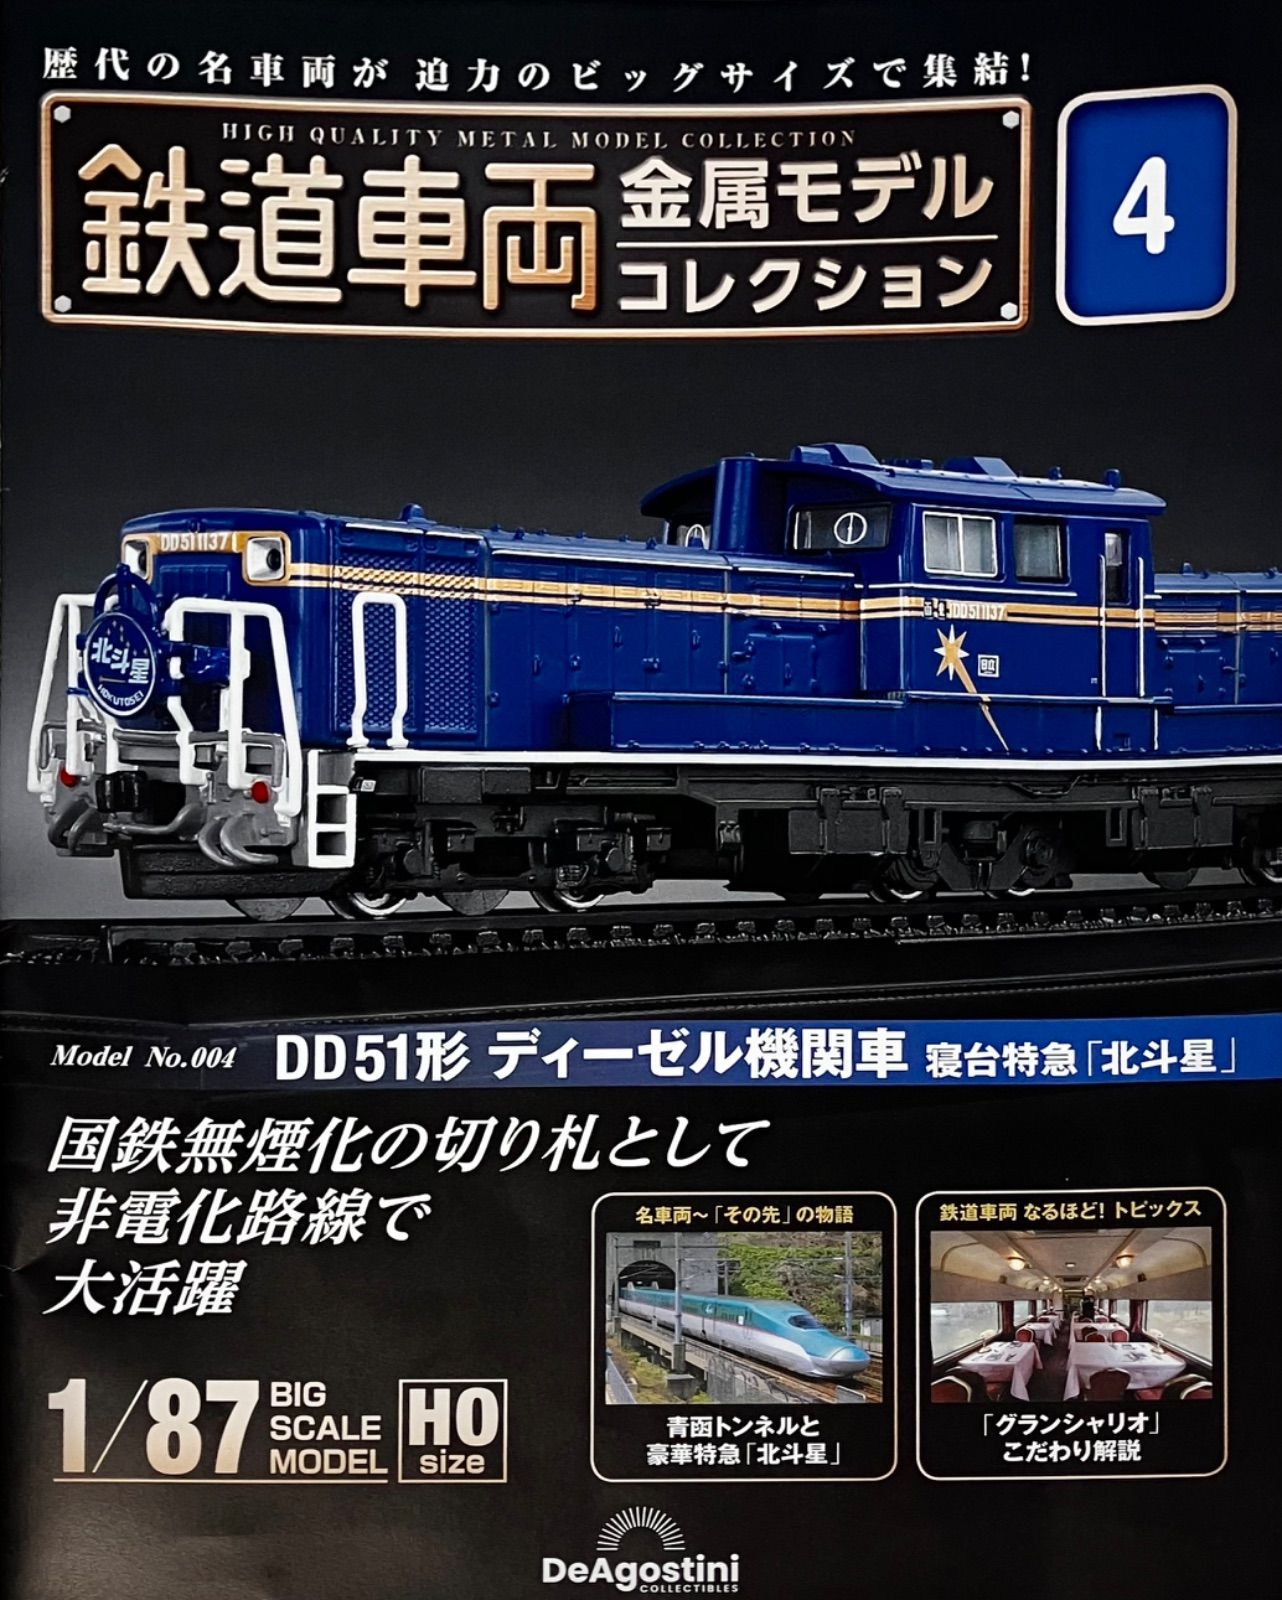 デアゴスティーニ 鉄道車両 金属モデルコレクション7 東海道線 - 鉄道模型